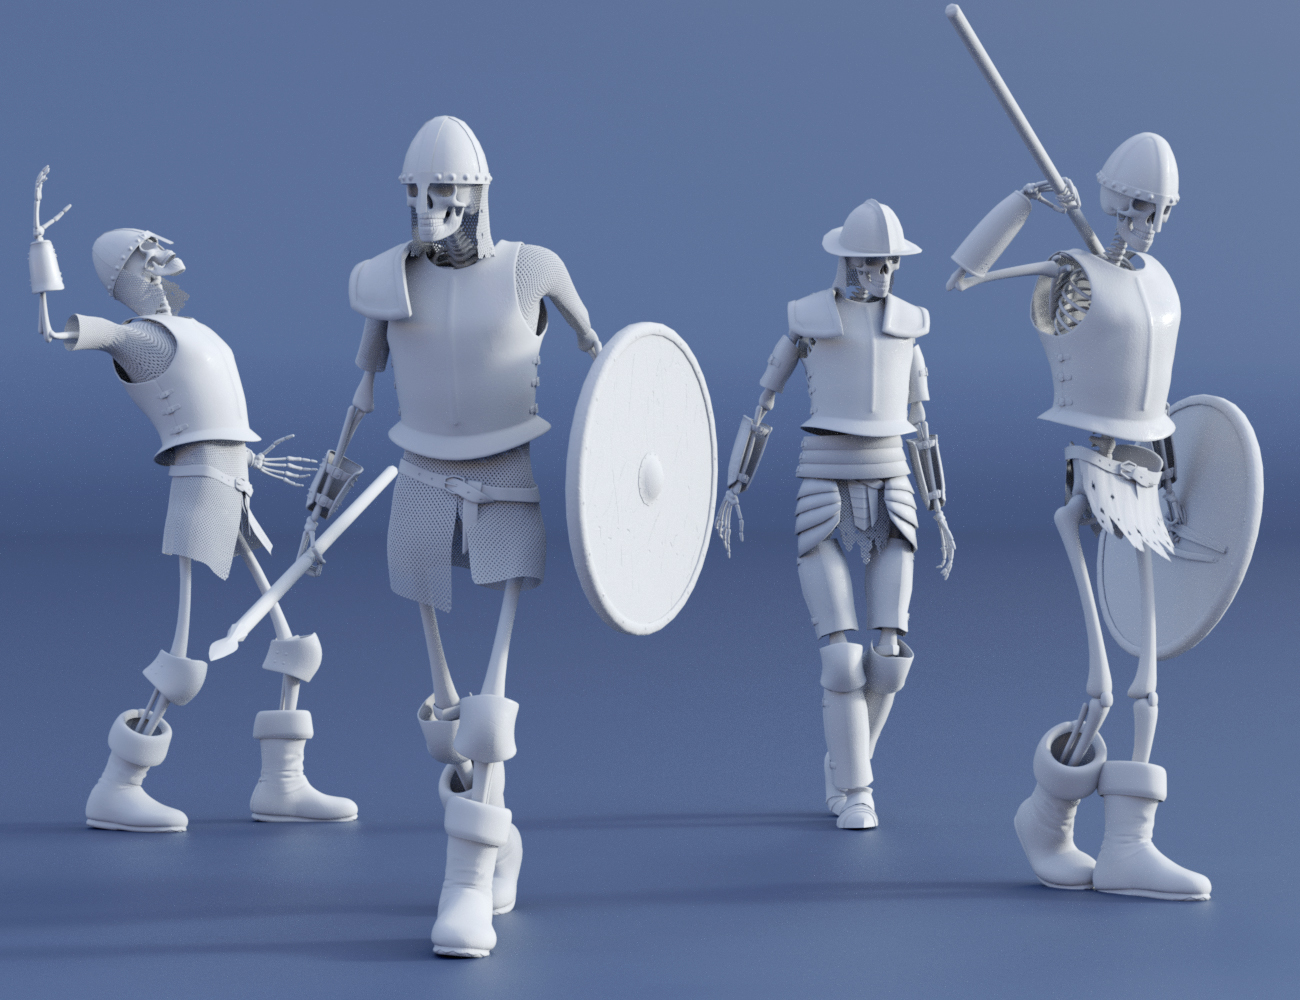 LoREZ Skeleton Army by: Predatron, 3D Models by Daz 3D